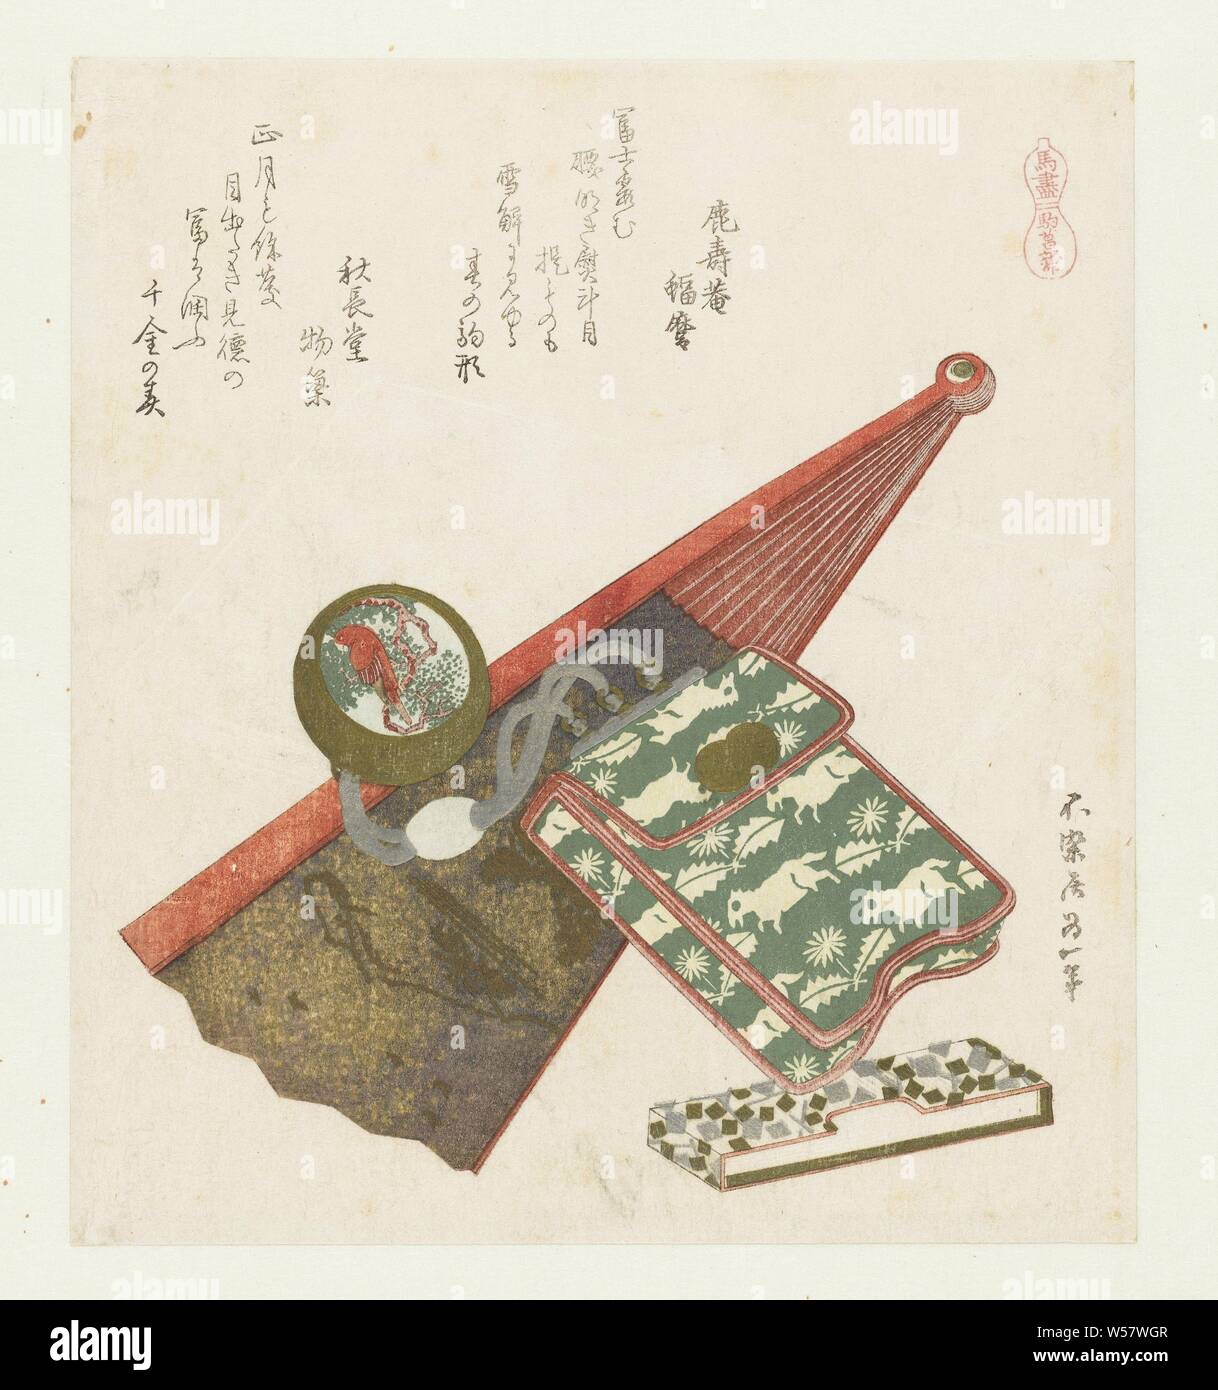 Pferde iris Komashobu (Titel auf Objekt) eine Reihe mit Pferden (Titel der Serie) Umazukushi (Titel der Serie auf Objekt), ein Tabak Beutel mit einem Riemen Knoten (NETSUKE) und eine teilweise geöffnet Ventilator mit dem Bild einer Berglandschaft, neben einem Stapel Papier. Pferde sind auf der tabaksbeutel dargestellt, einen Papagei auf den Riemen Knoten. Mit zwei Gedichte., Katsushika Hokusai (auf Objekt erwähnt), Japan, 1822, Papier, Farbholzschnitt, H 205 mm x B 184 mm Stockfoto